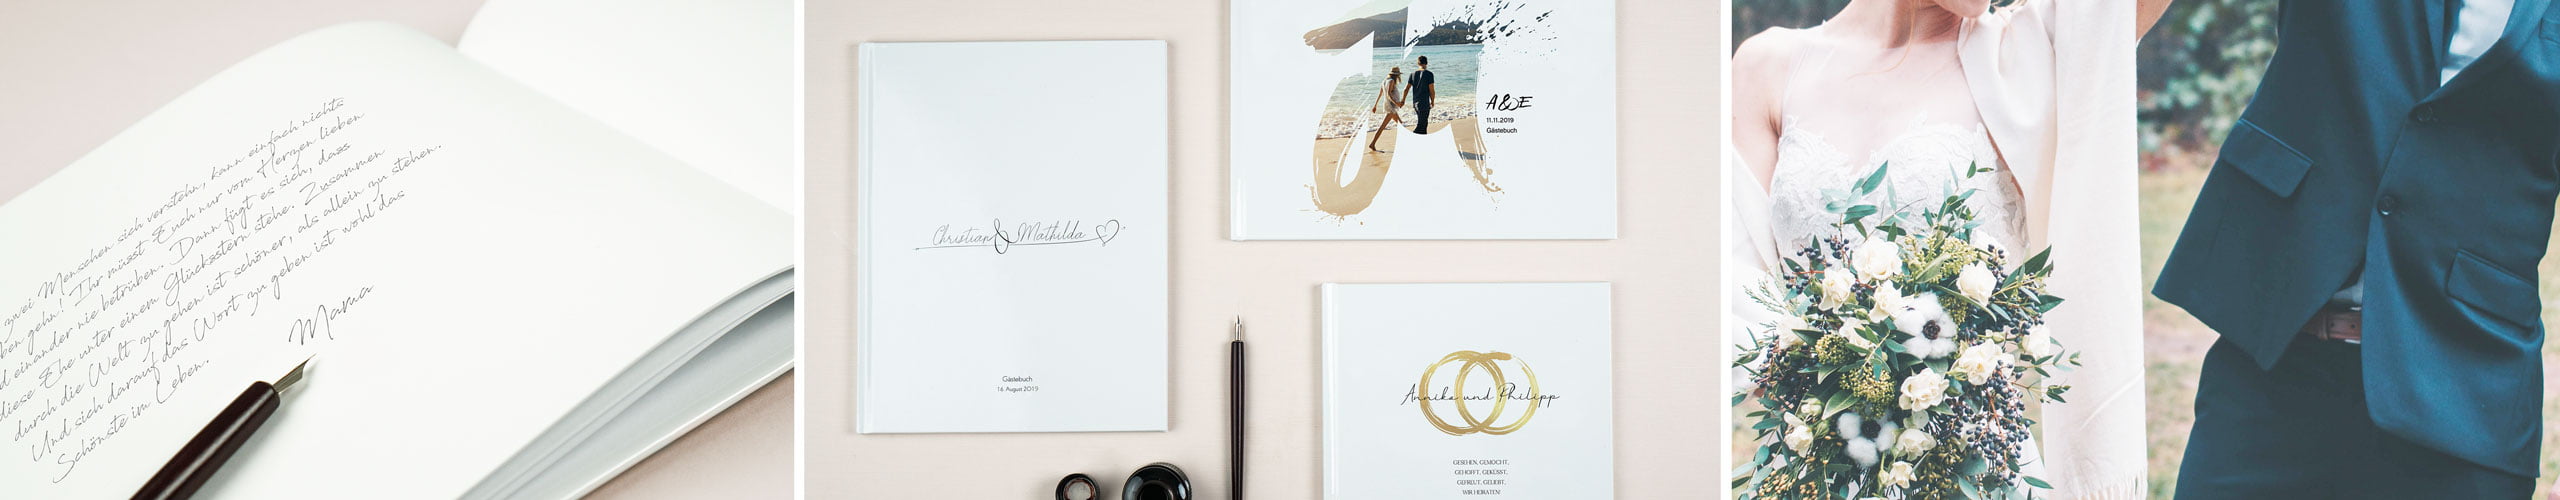 Gästebücher für die Hochzeit in verschiedenen Designs